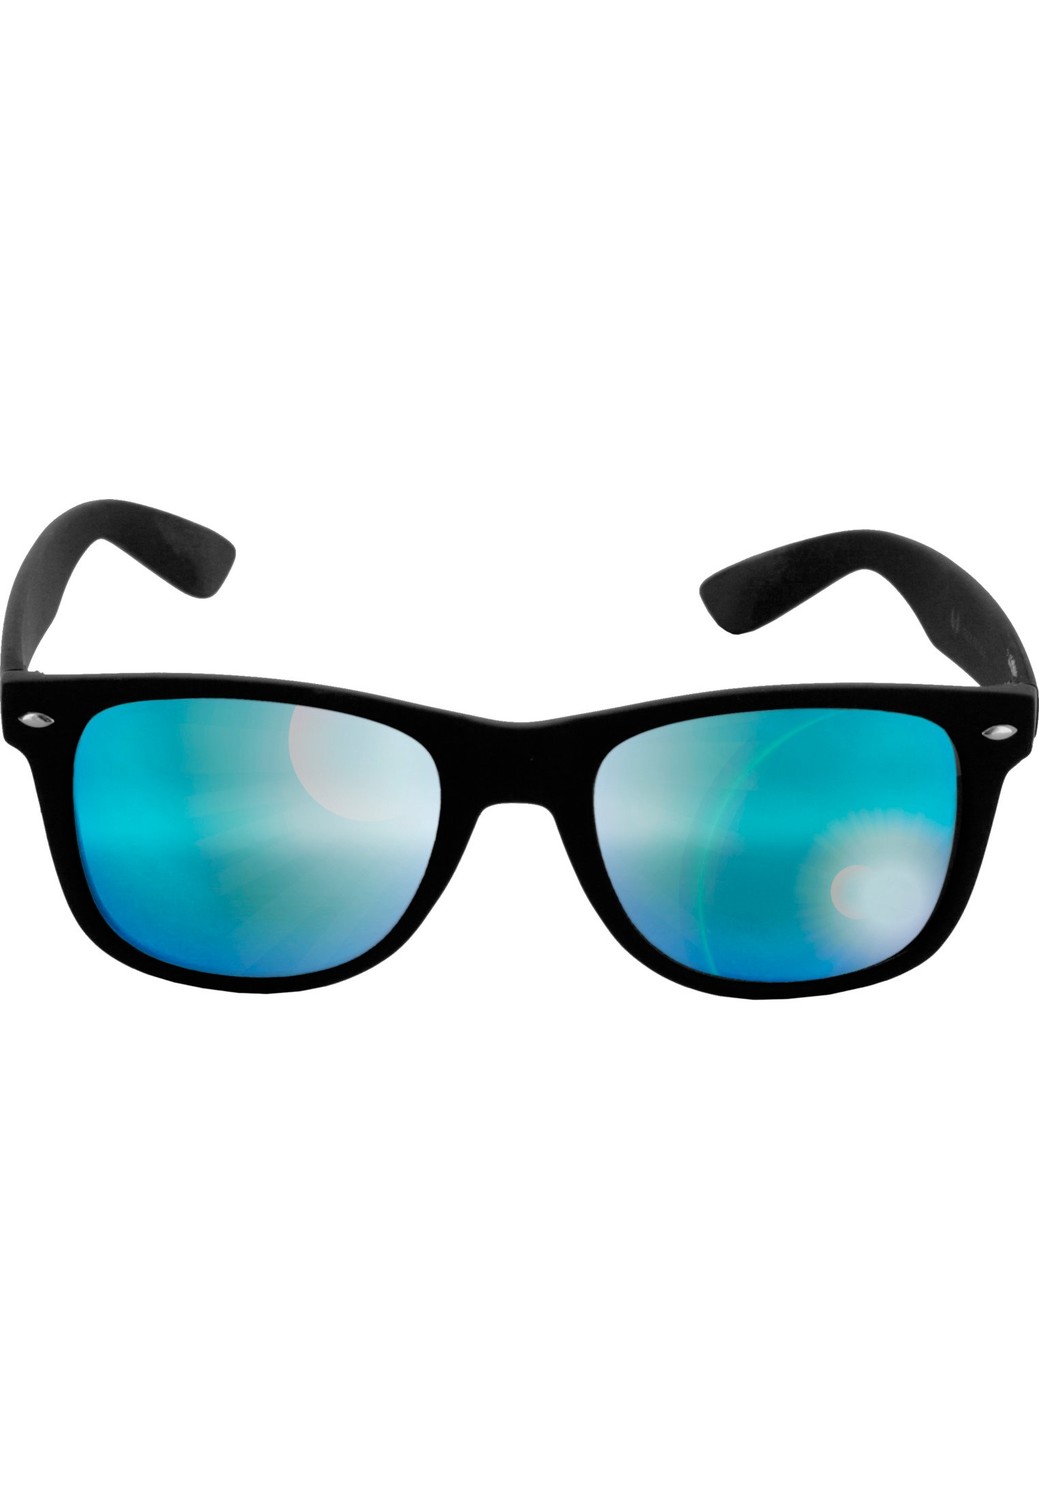 Sluneční brýle Likoma Mirror blk/blue